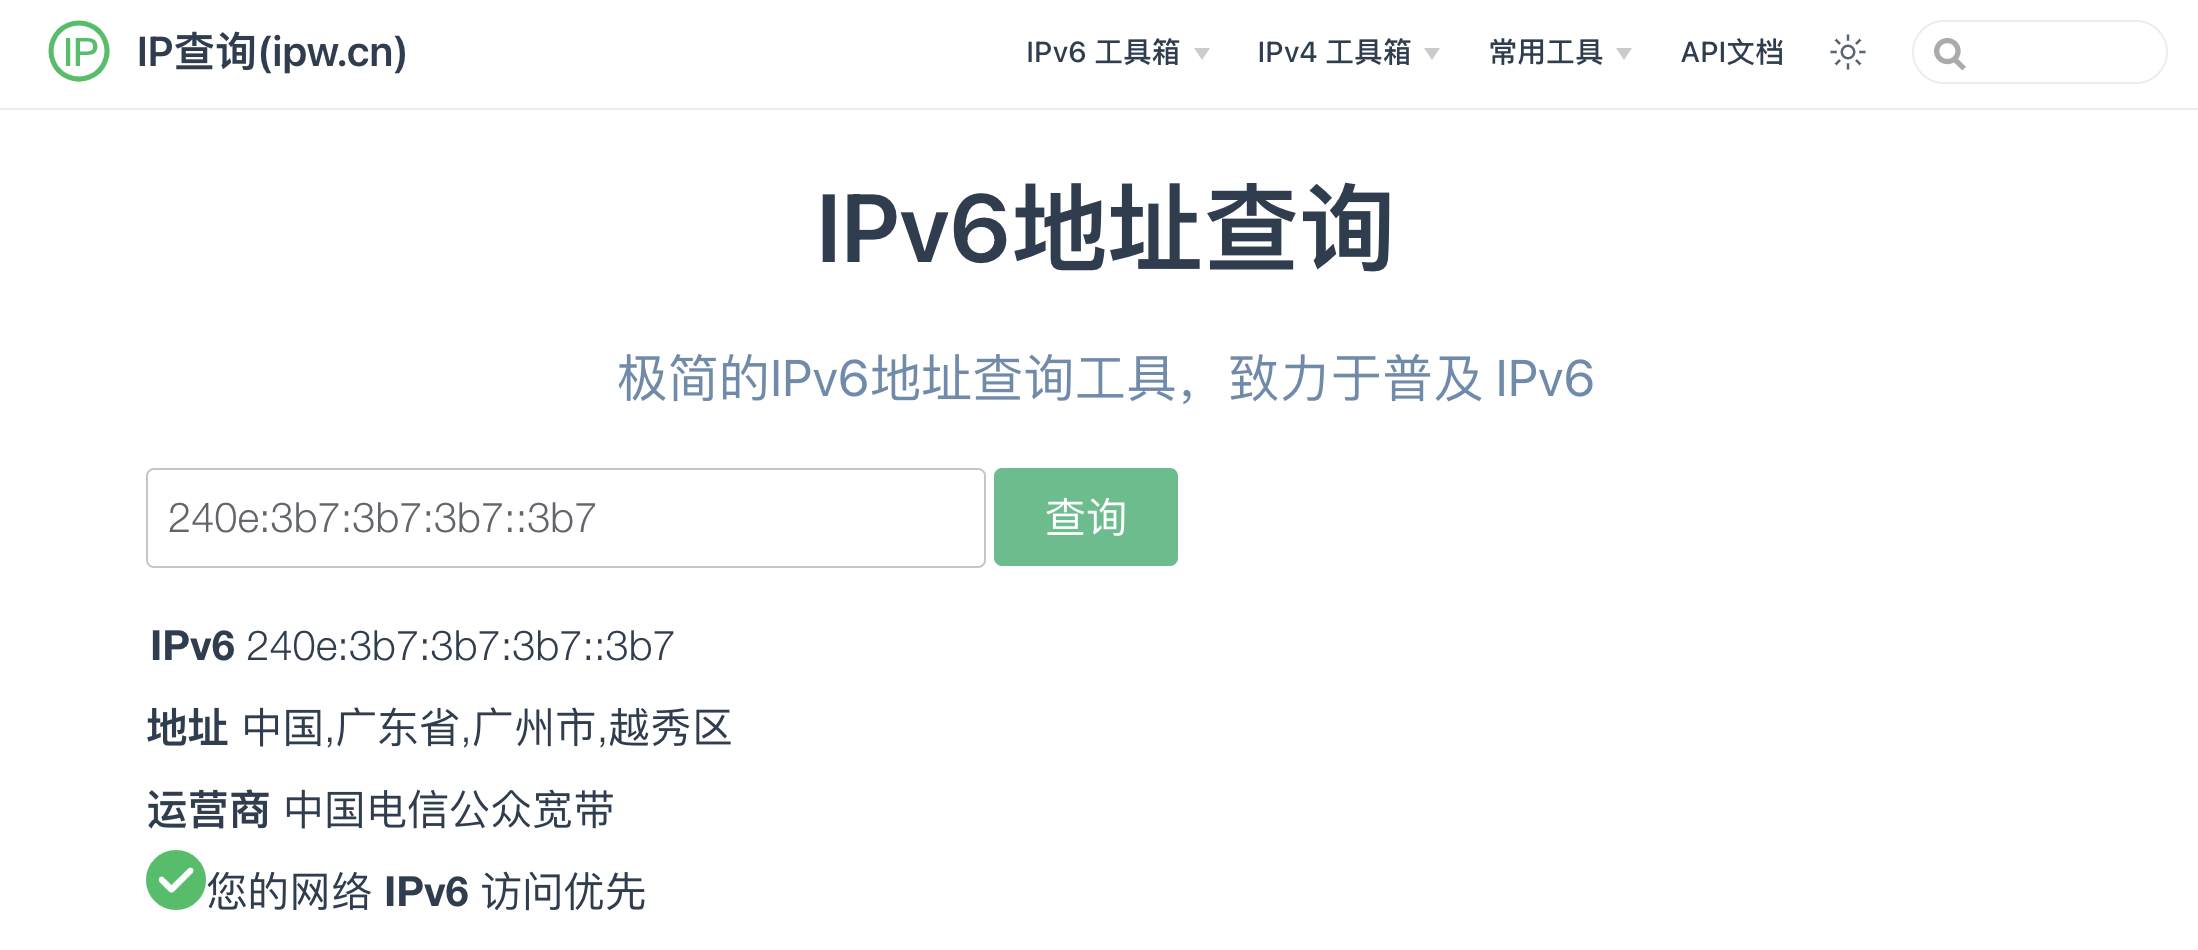 您的网络 IPv6 访问优先